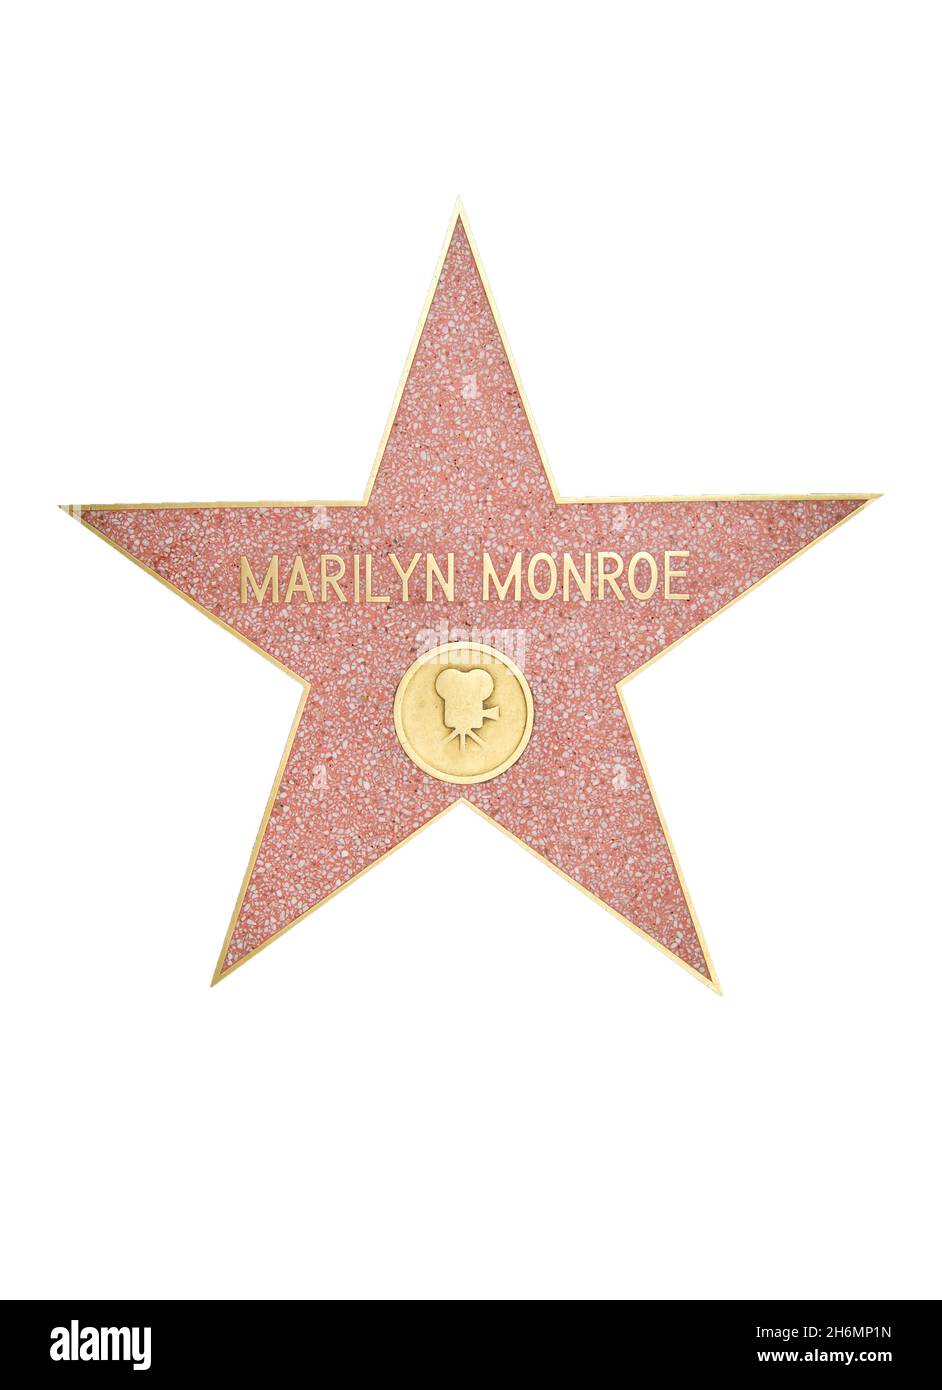 hollywood star marilyn monroe